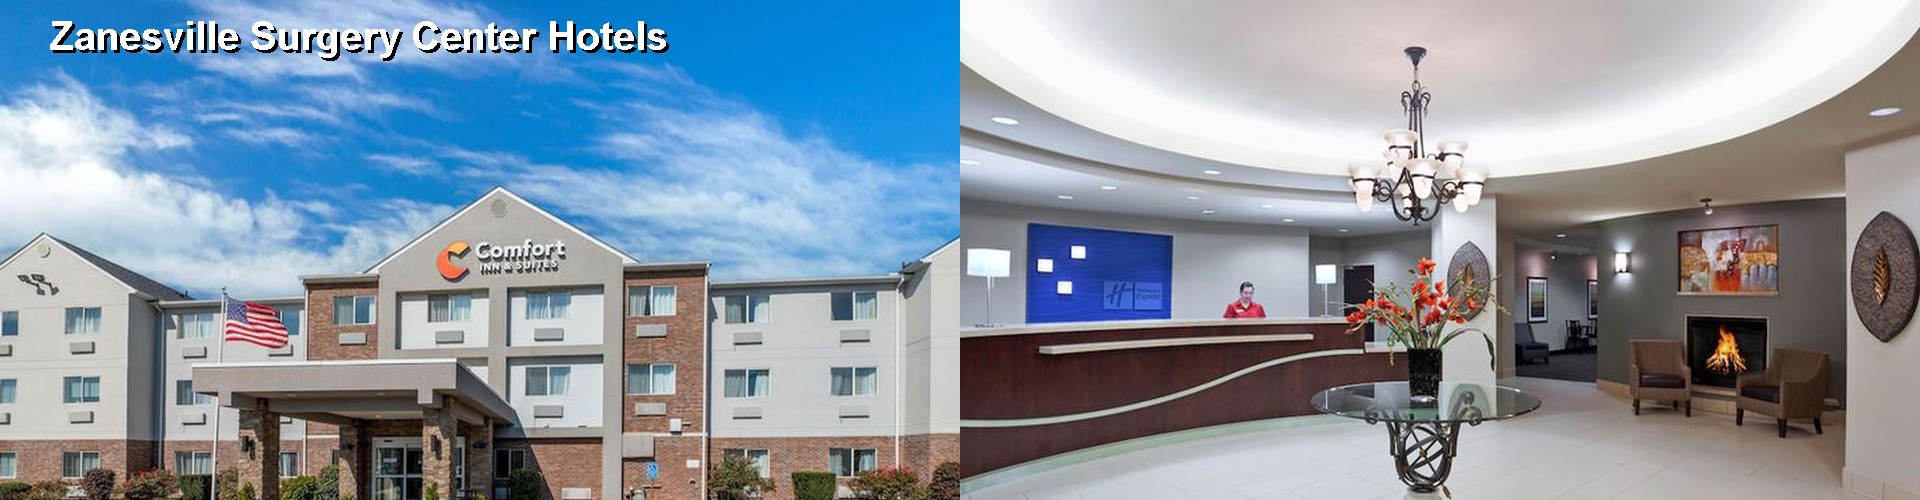 5 Best Hotels near Zanesville Surgery Center